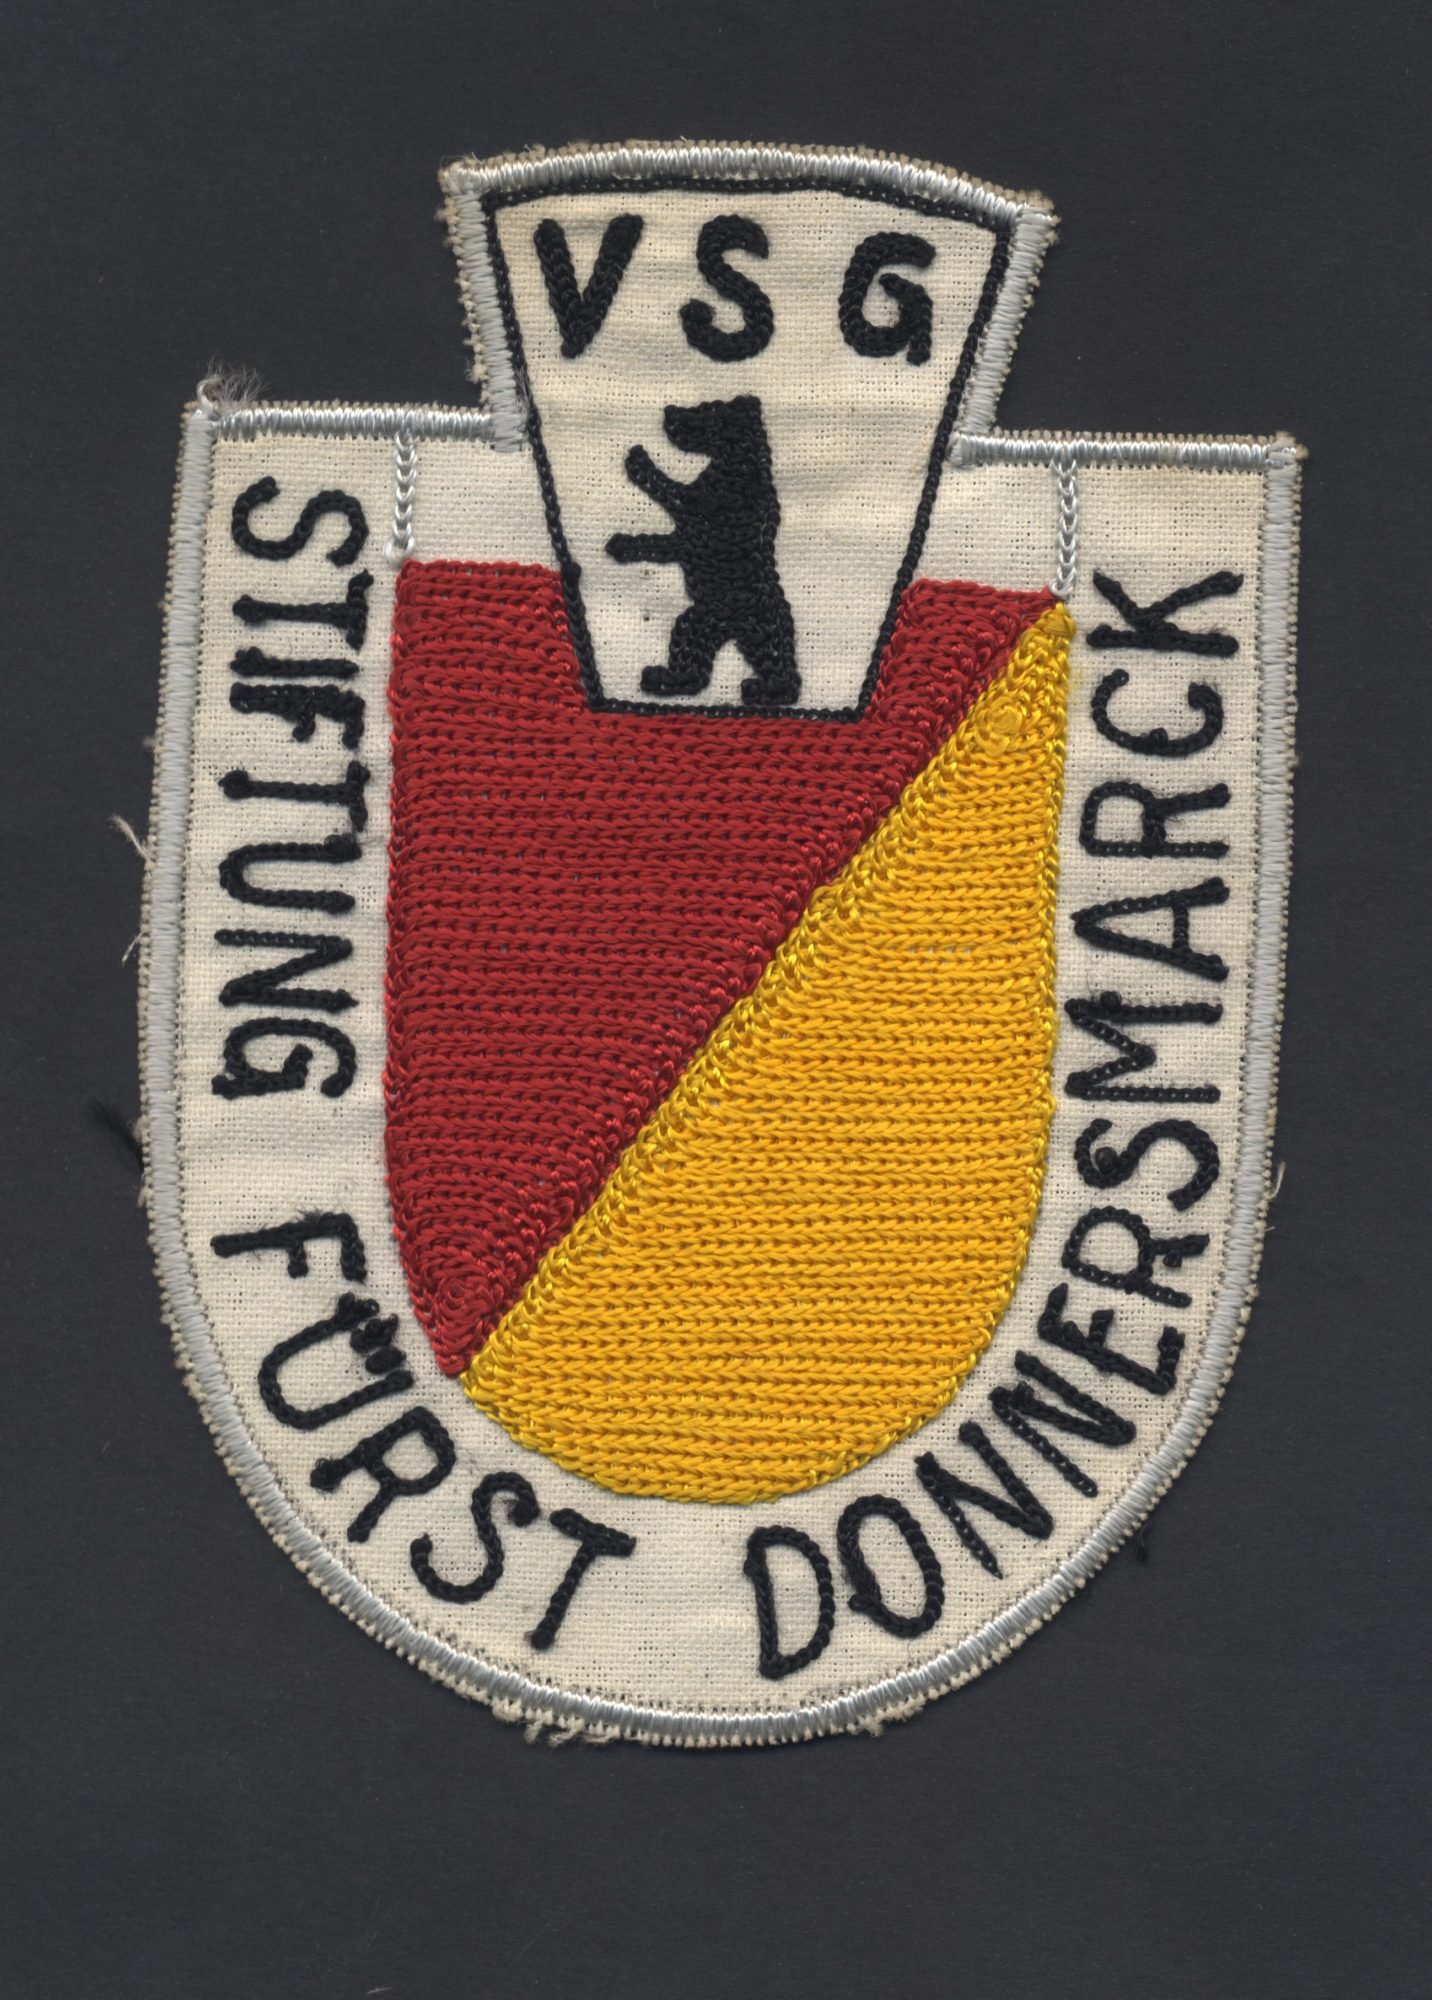 Das Abzeichen der VSG Donnersmarck: Ein Rot-Gelbes Wappen, darüber der Berliner Bär und die Beschriftung VSG Stiftung Fürst Donnersmarck.